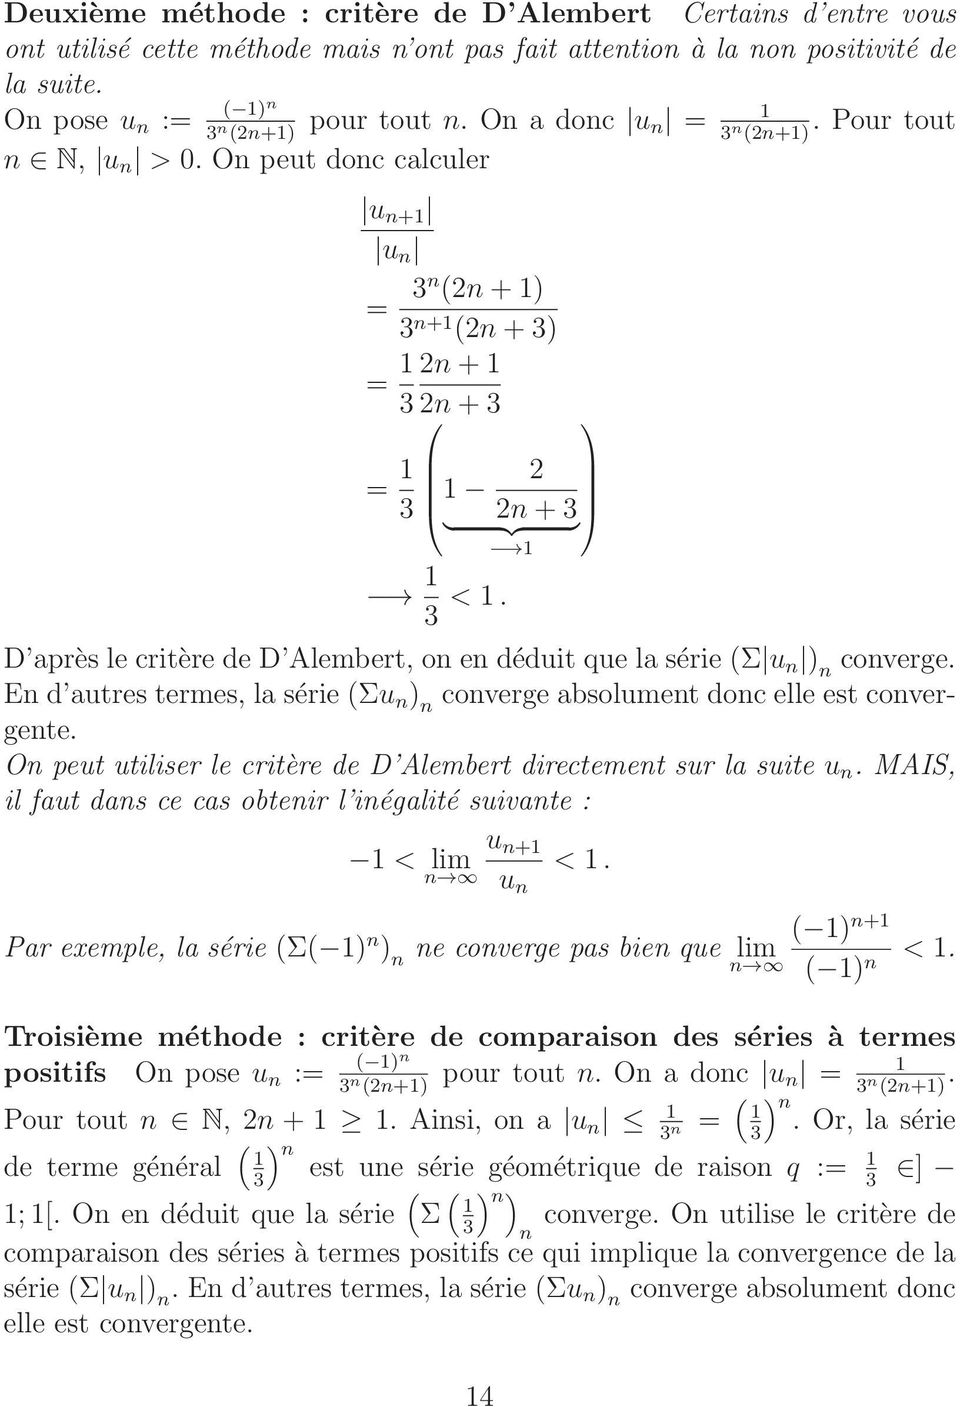 D après le critère de D Alembert, on en déduit que la série (Σ u n ) n converge. En d autres termes, la série (Σu n ) n converge absolument donc elle est convergente.